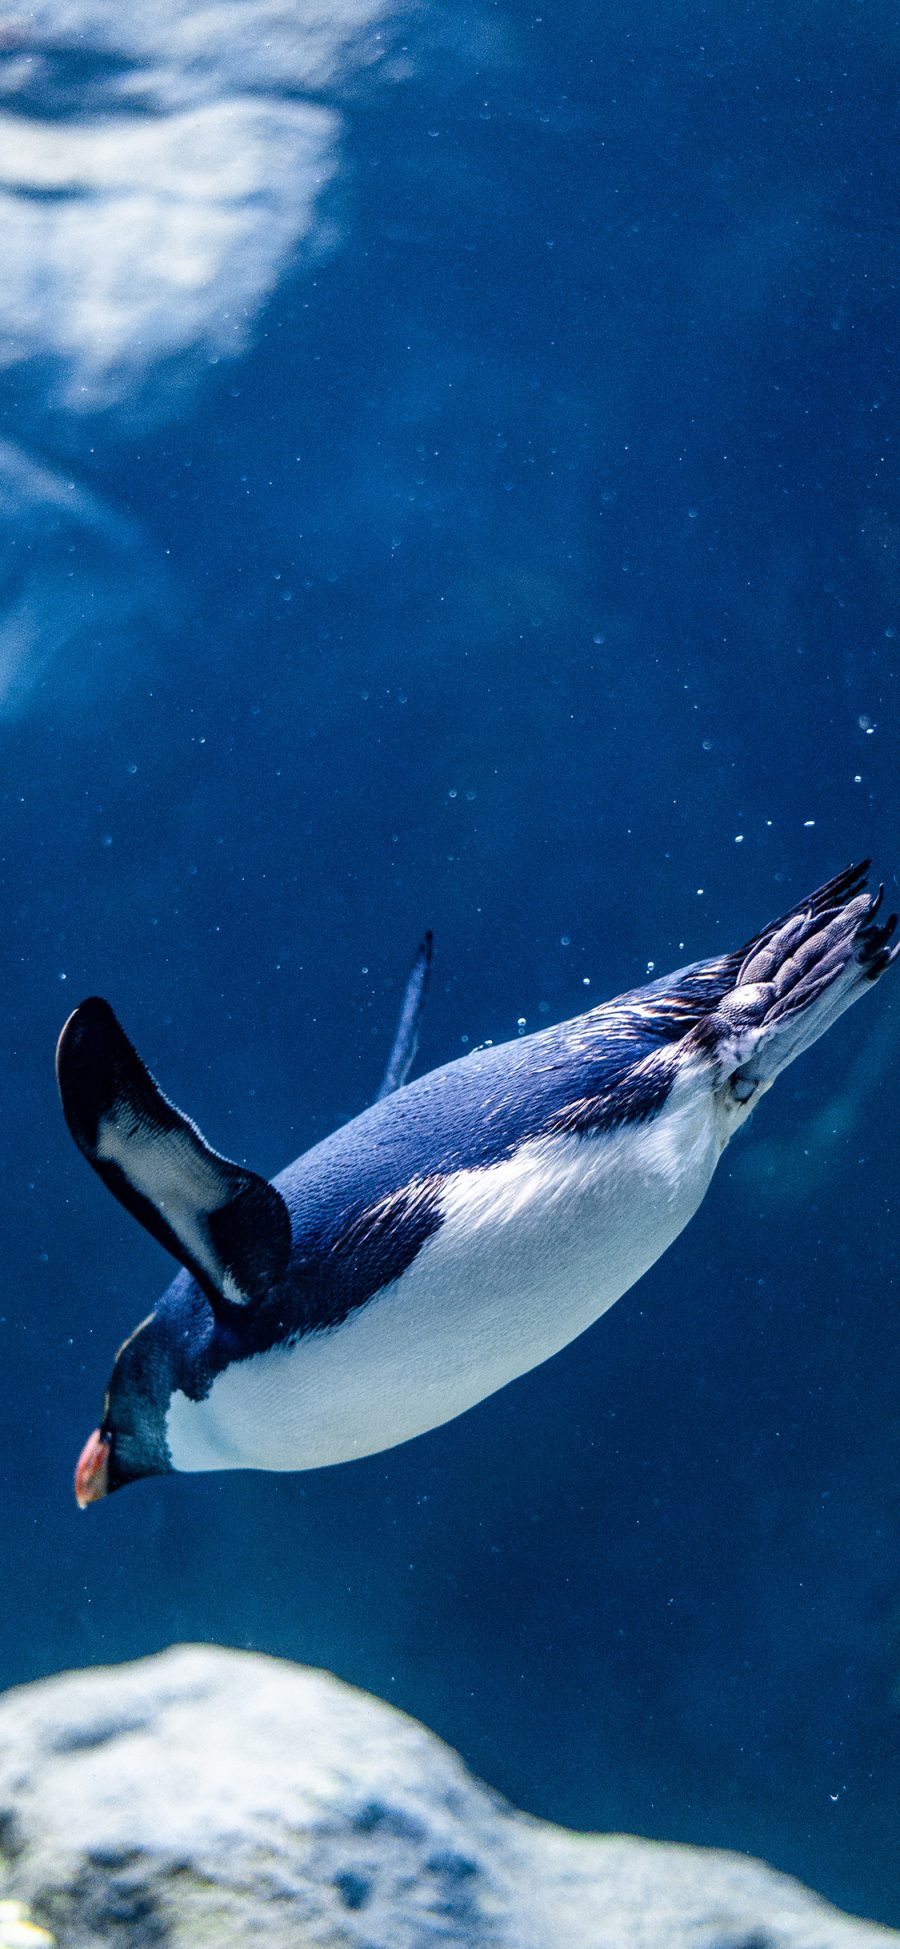 [2436×1125]企鹅 游禽 海水 海底 苹果手机壁纸图片